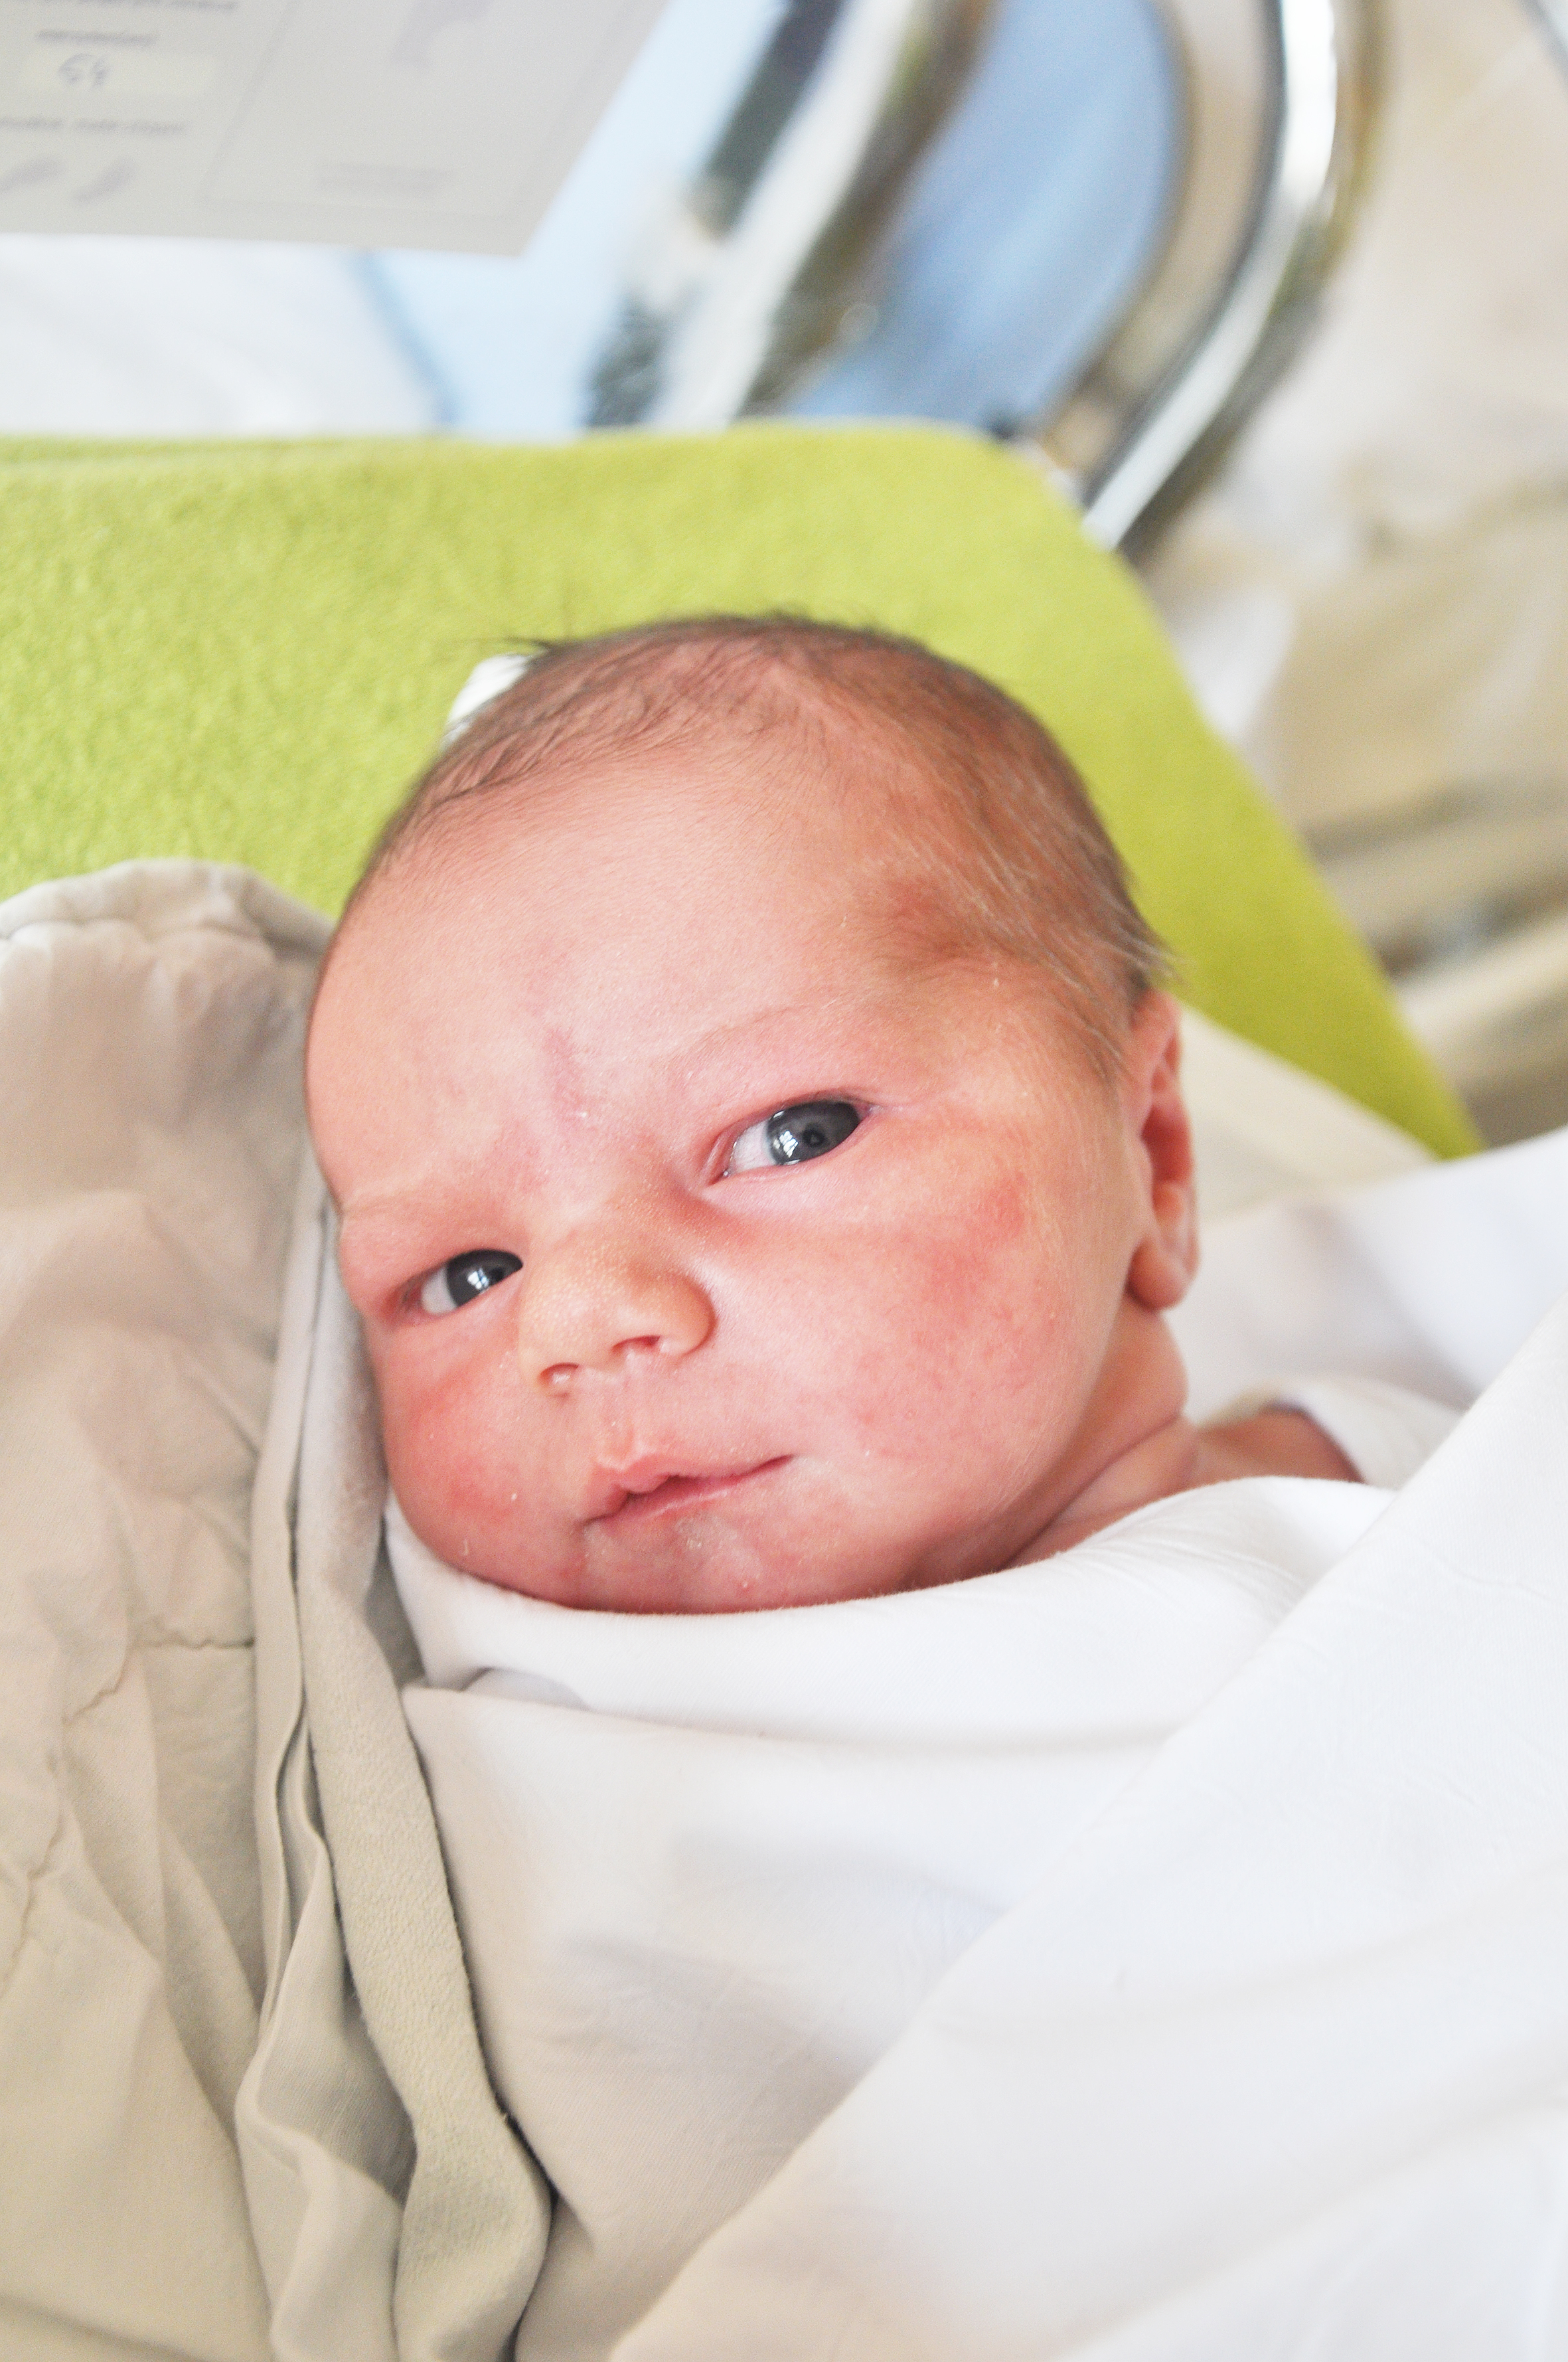 Marcin Ternka to nowy mieszkaniec Pietraszyna, pierwsze dziecko Haliny i Adriana. Urodził się 21 marca o 21.30. Początkowa waga wyniosła 3410 g przy długości 54 cm.